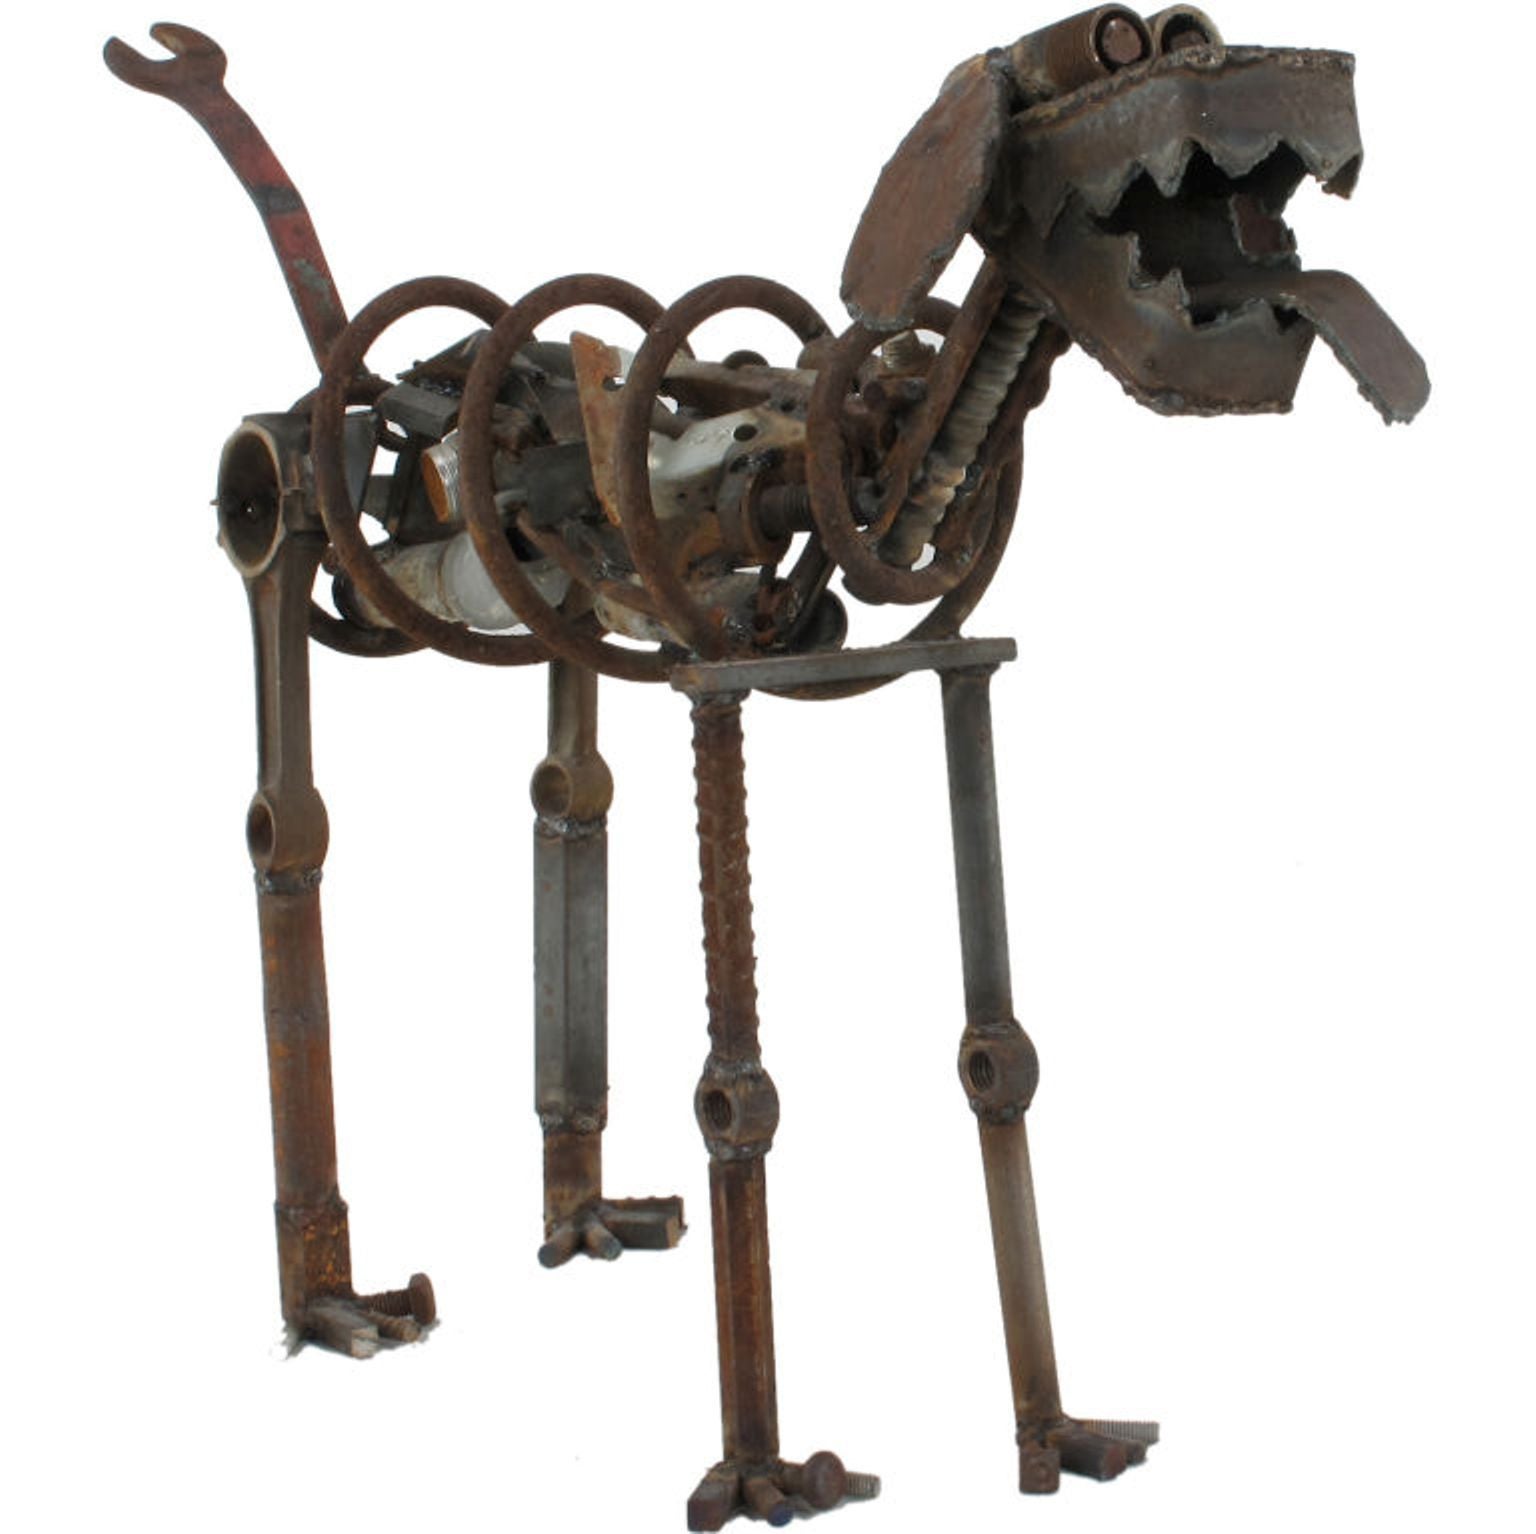 Life Sized Folk Art geschweißten Stahl und Eisen Hundeskulptur